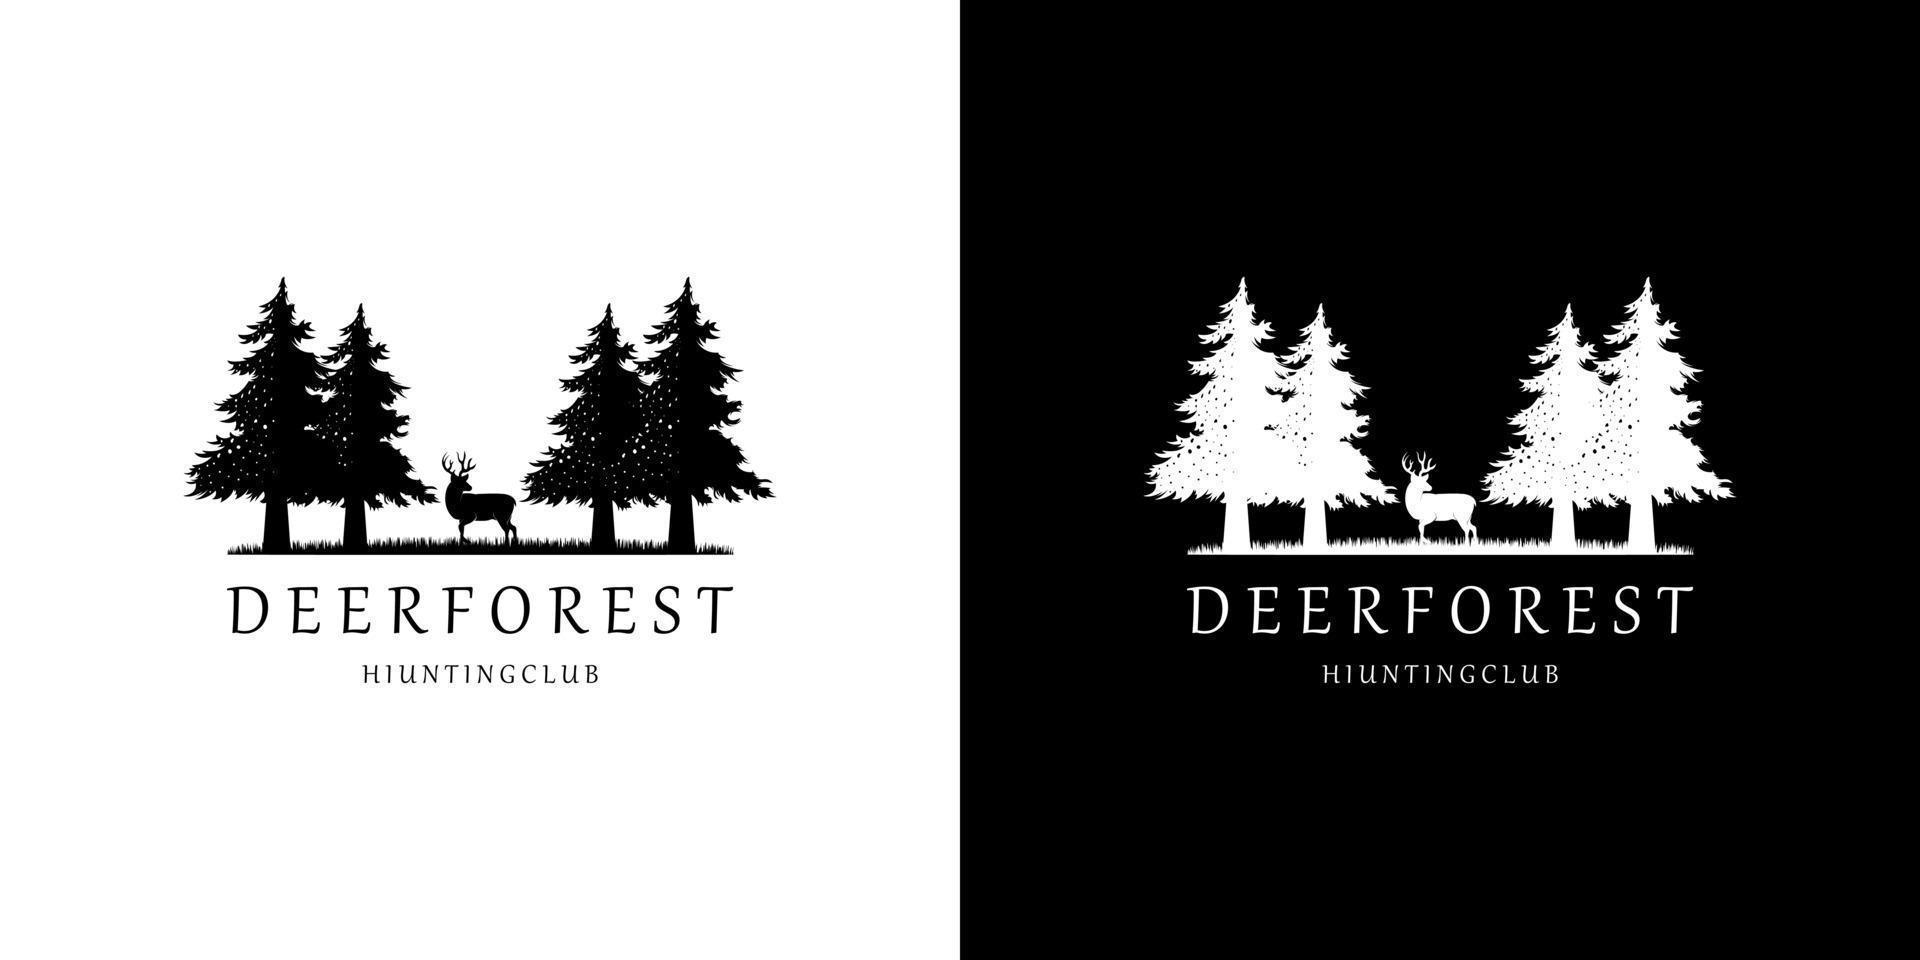 vettore di design del logo della foresta di pini di abete dei cervi